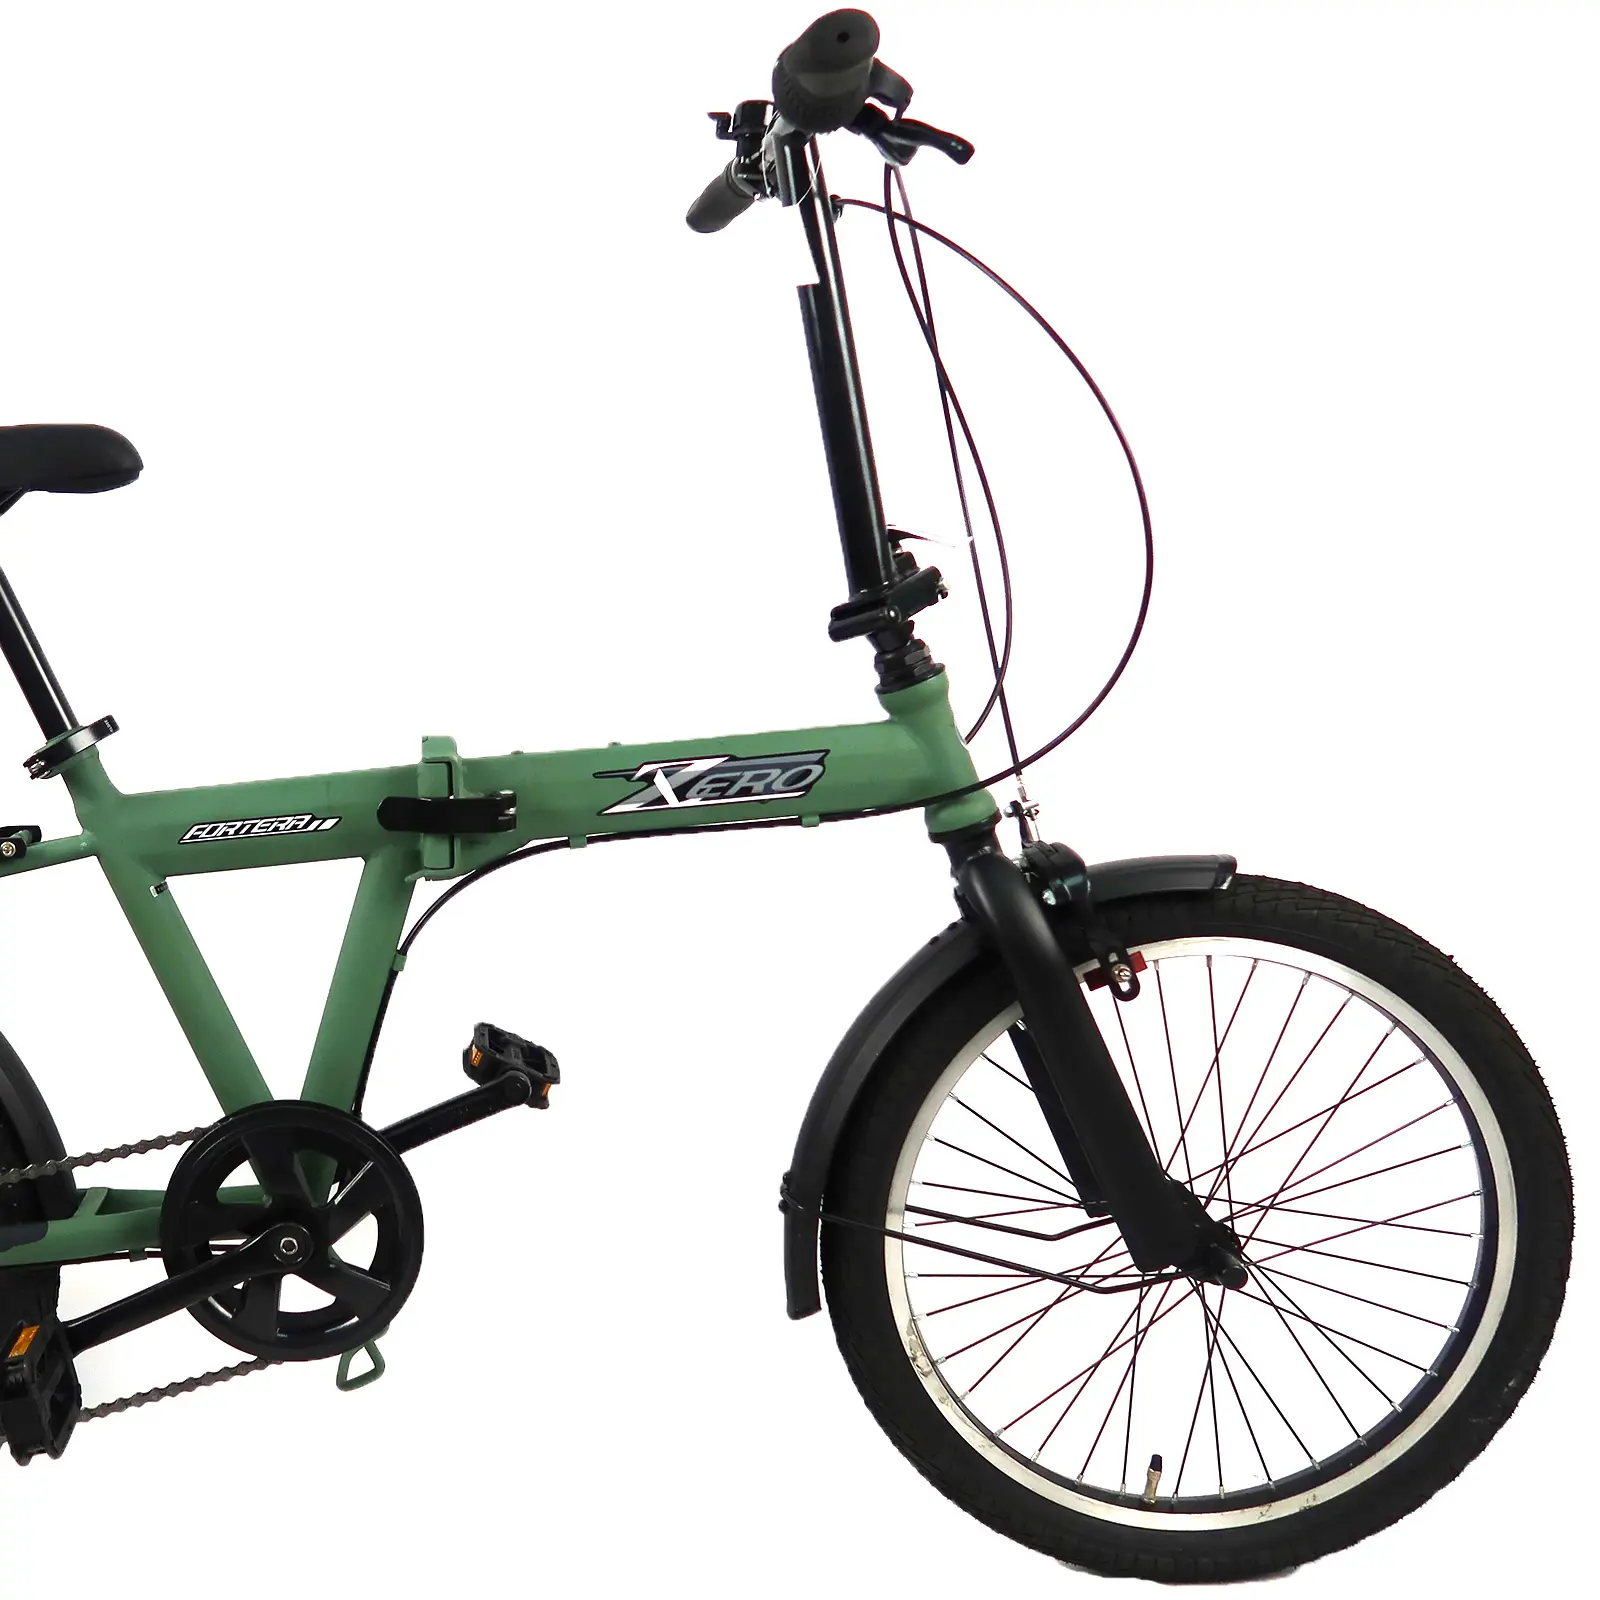 Bicicleta dobrável leve para a cidade, bicicleta recreativa com motorista de 20" para viagens escolares e de trabalho, pode ser colocada no porta-malas